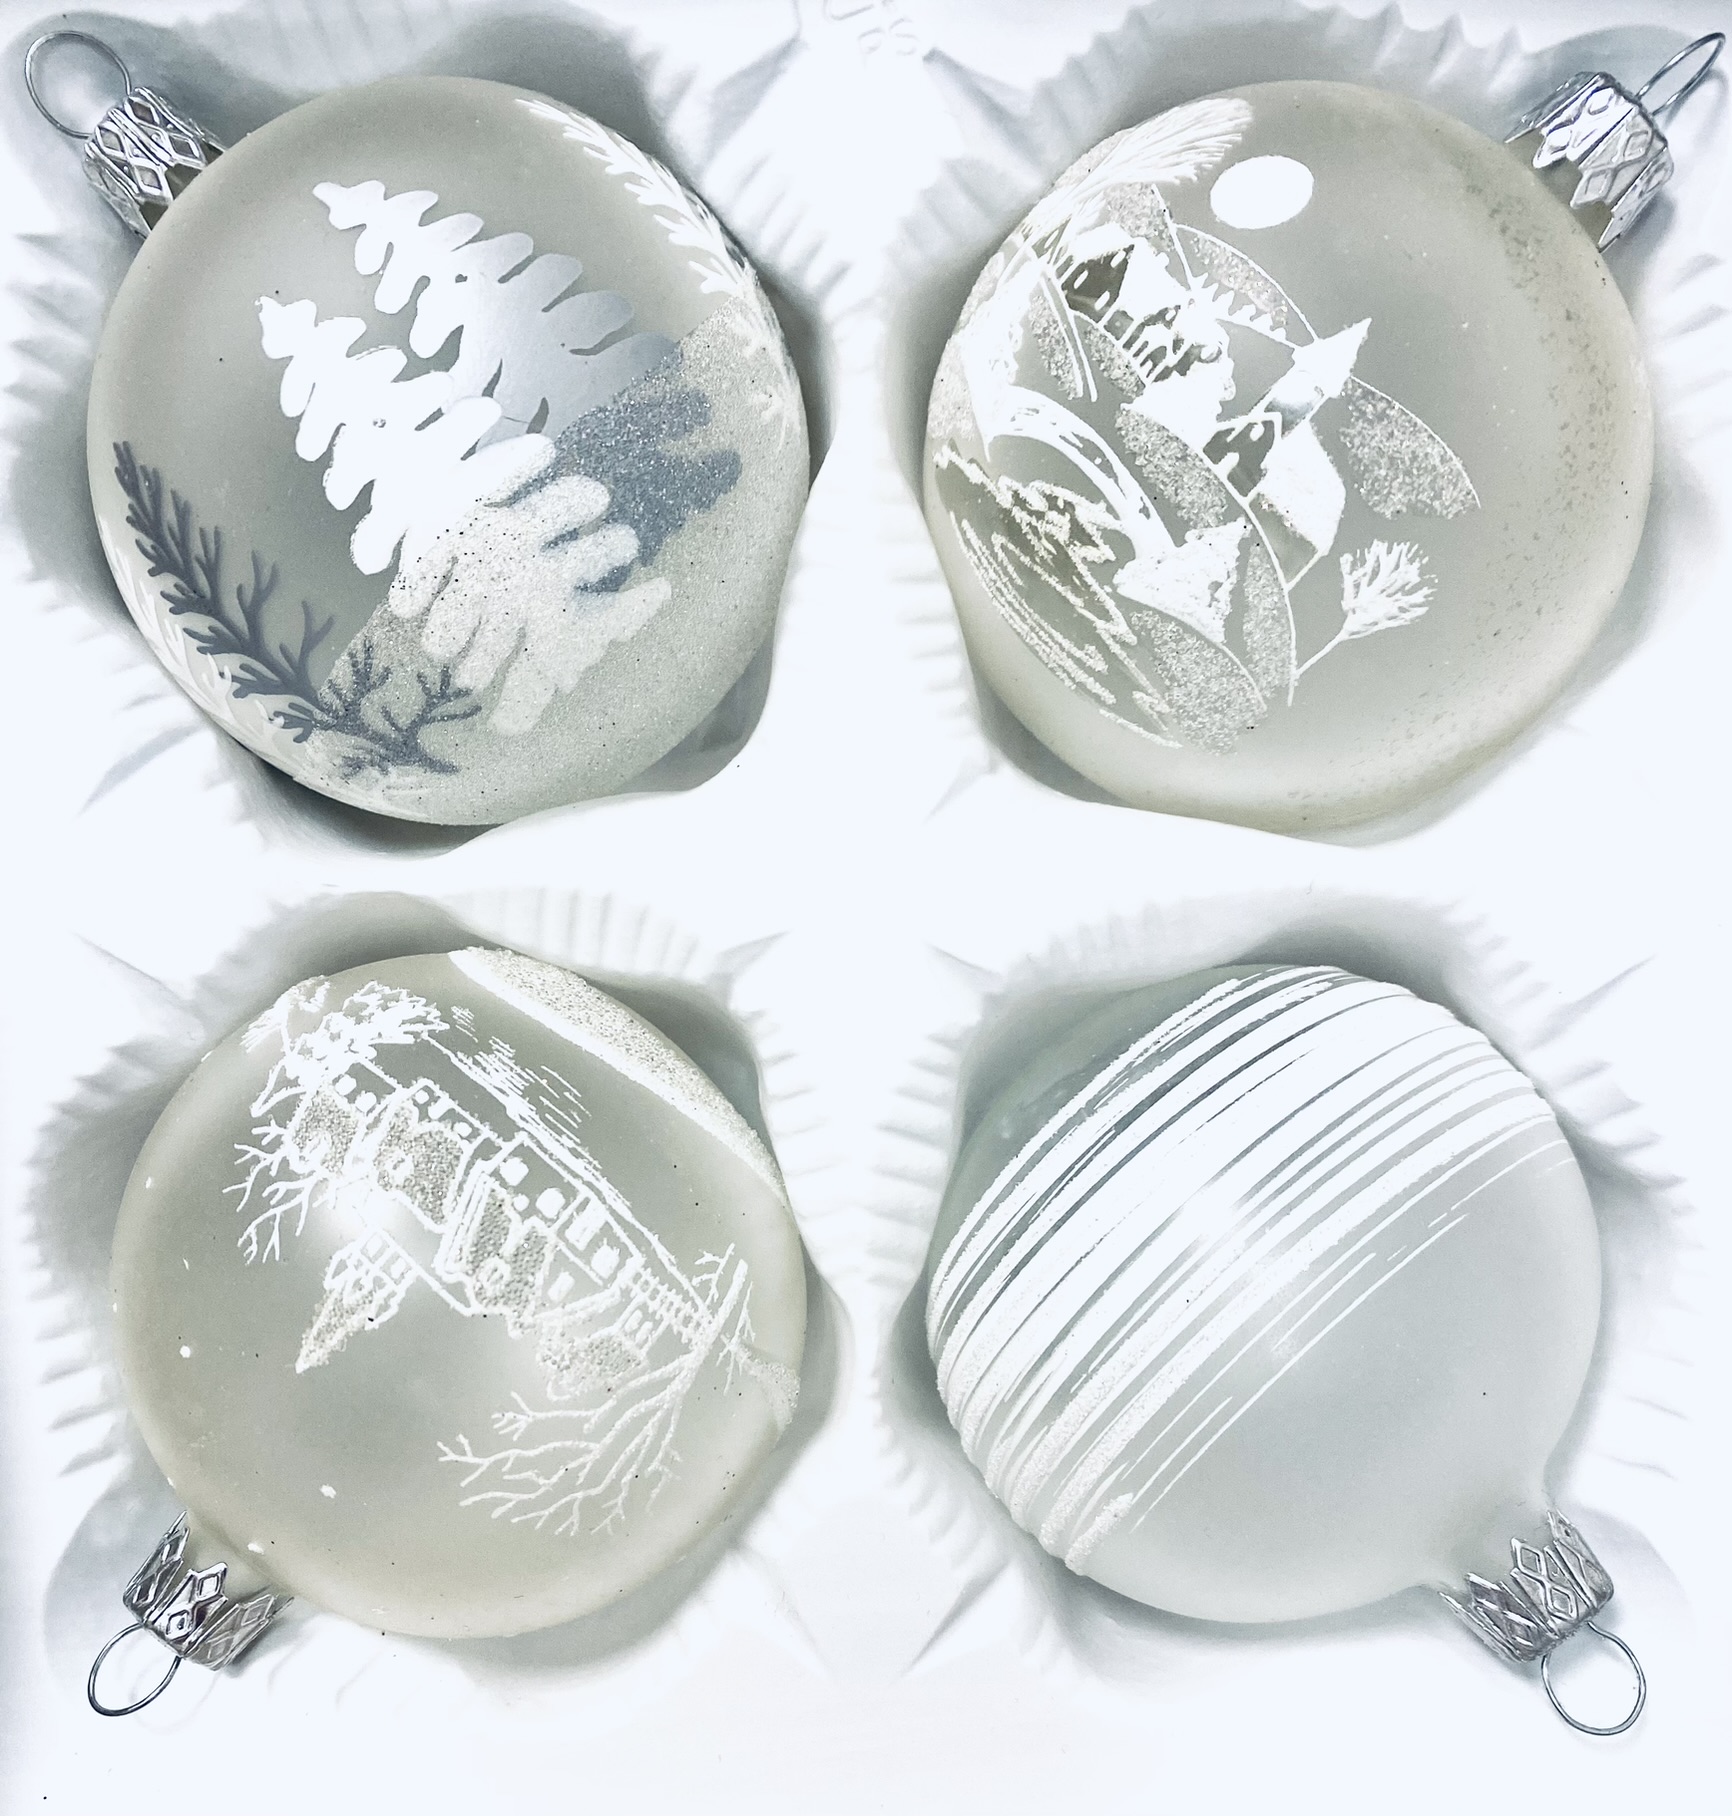 IRISA Zimní pohádka: Skleněná vánoční sada - Bílá krása ve 4 Kusech (Velikost 7 cm) Balení: 4 ks, Barva: bílá, Velikost: 7 cm